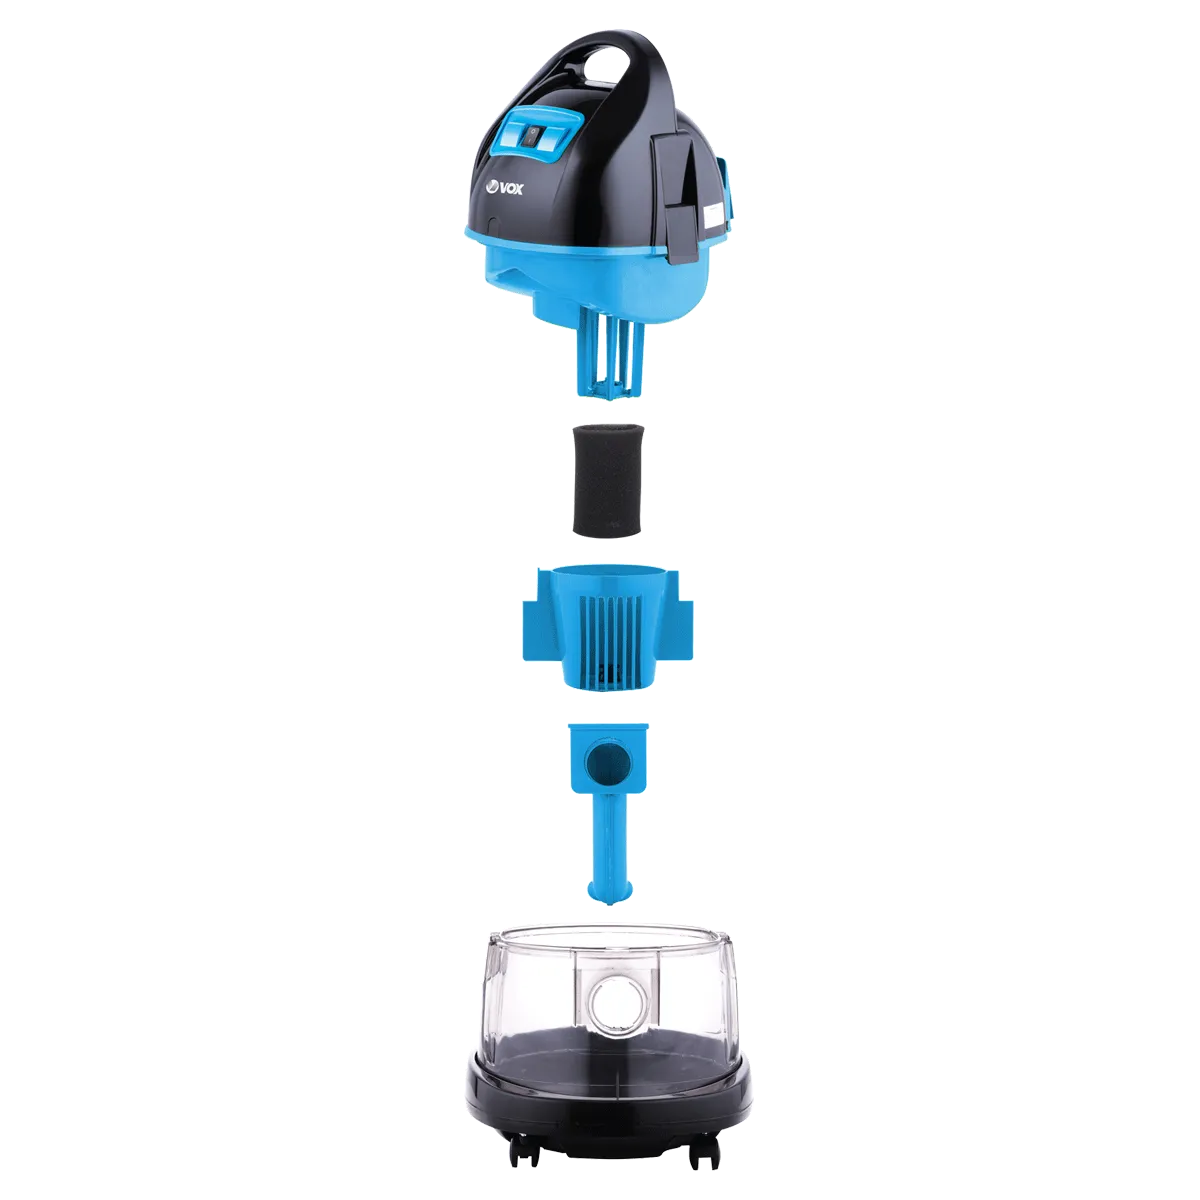 Vacuum cleaner SL 202 